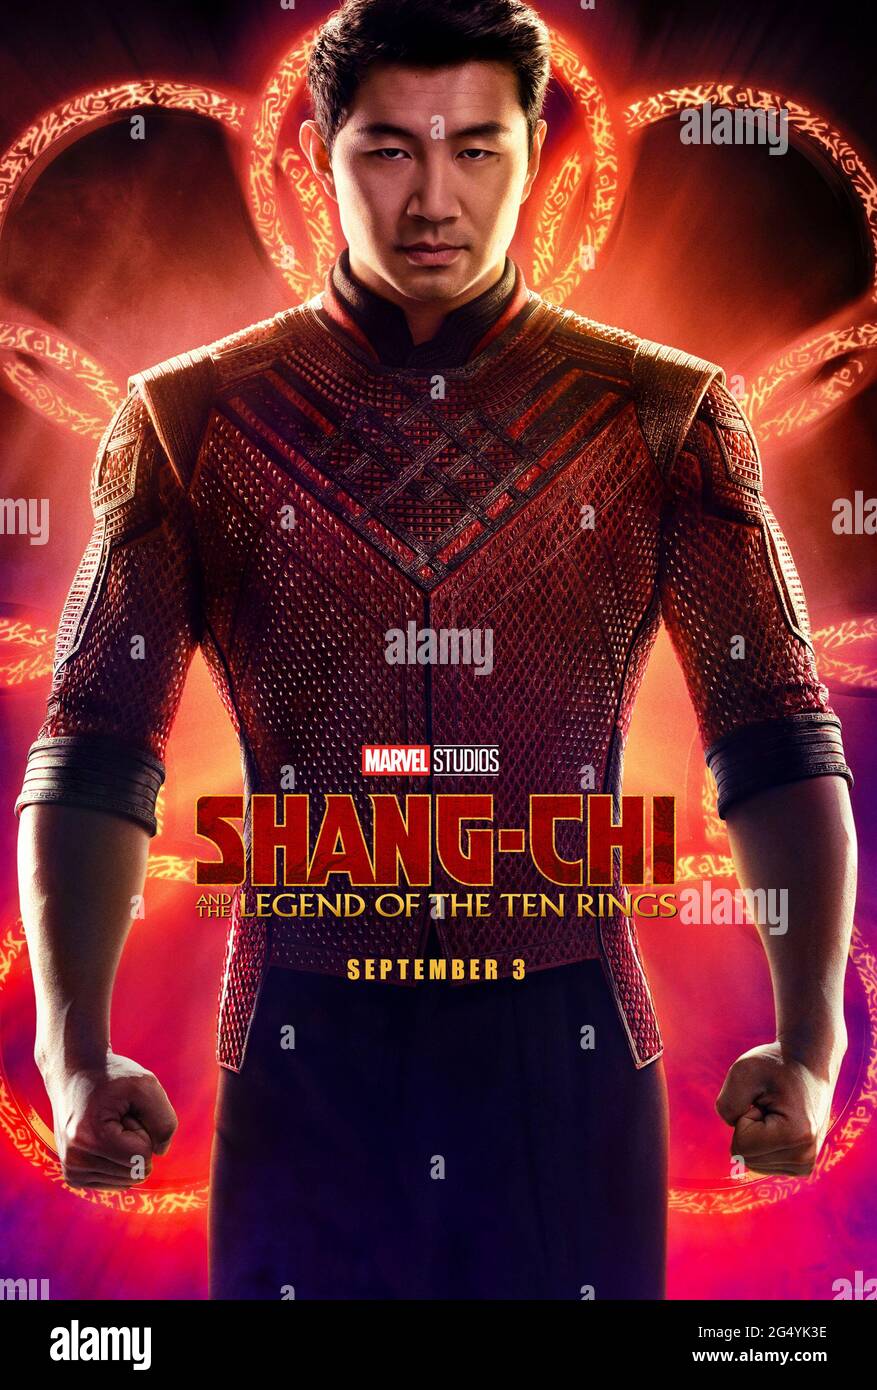 Shang-Chi et la légende des dix anneaux B8(2021) réalisé par destin Daniel Cretton et mettant en vedette Simu Liu, Awkwafina et Tony Chiu-Wai Leung. Sortie sur grand écran pour le super-héros Marvel Comics Shang-Chi, le Maître de Kung Fu. Banque D'Images